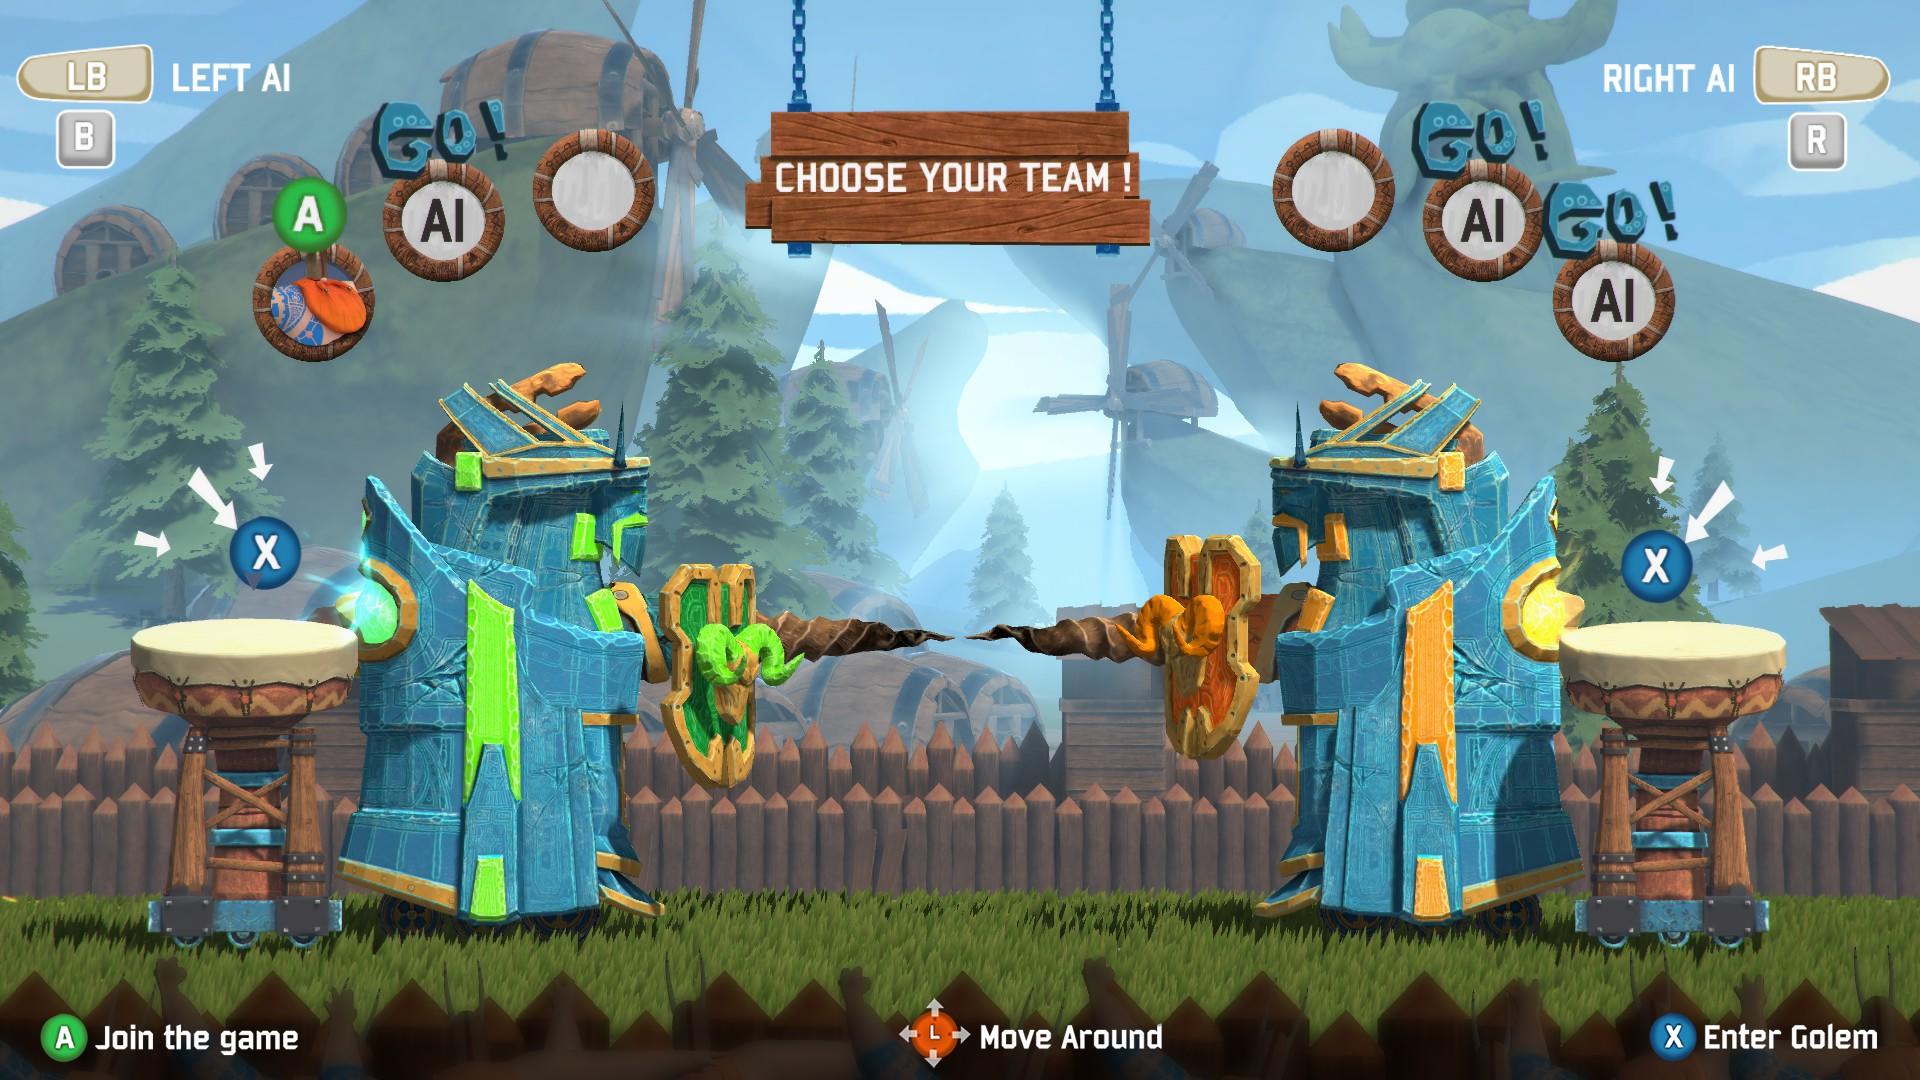 Crewsaders screenshot game